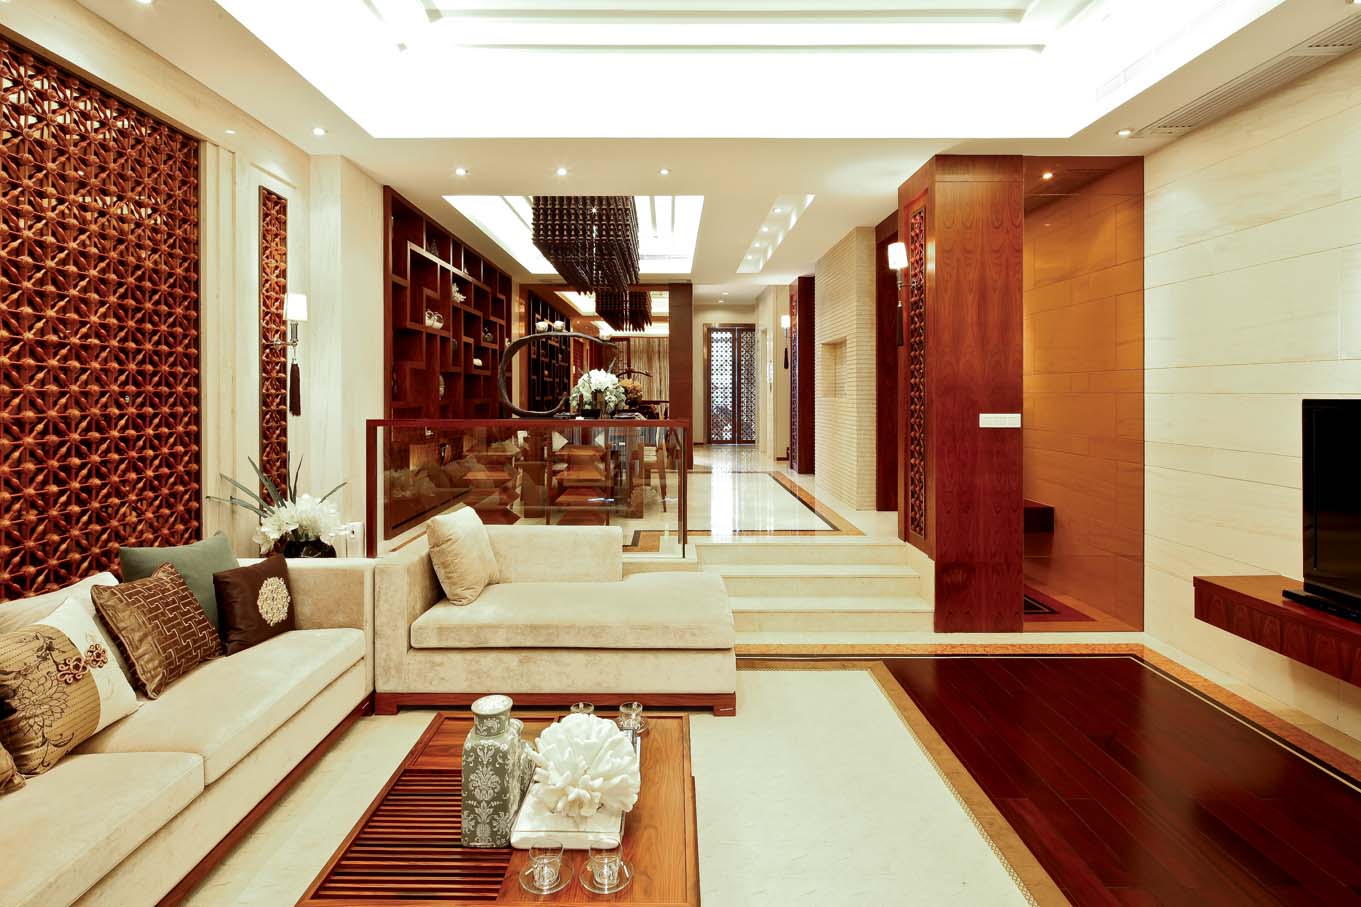 新中式 中式风格 室内设计 装修风格 装修设计 客厅图片来自别墅装修设计yan在新中式风格首创国际半岛的分享